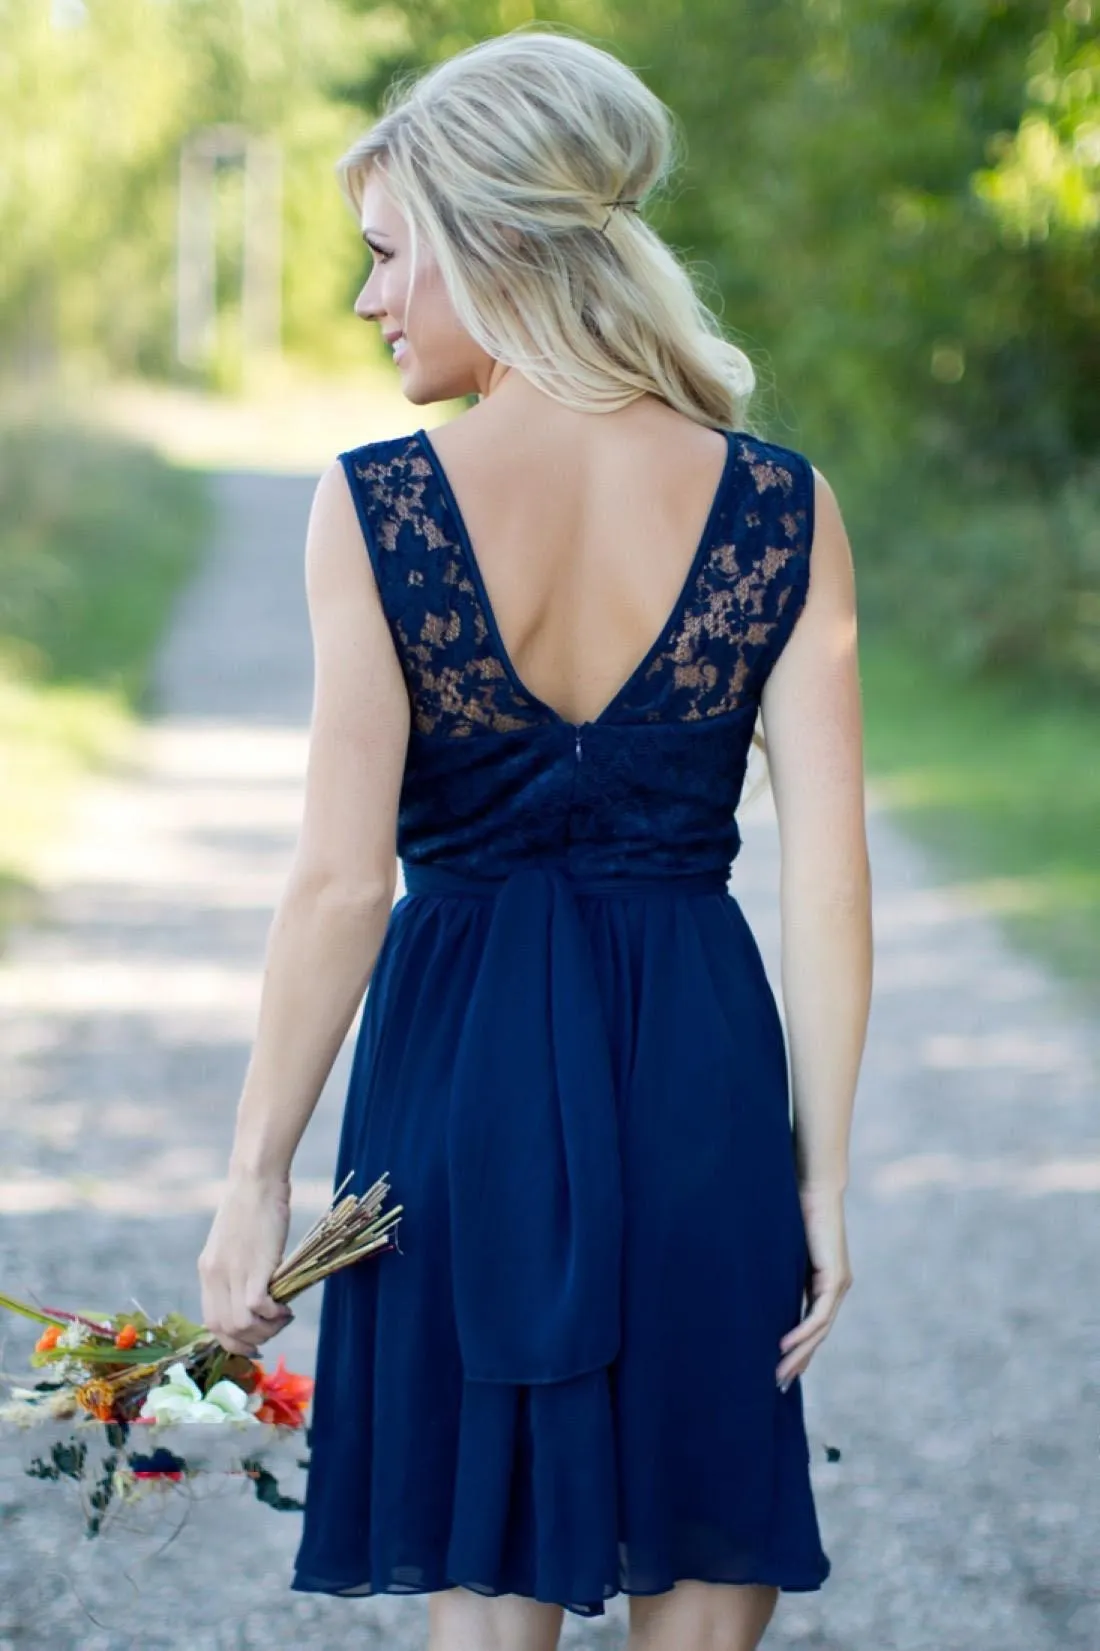 Landstijl Royal Blue Chiffon Lace Short Bruidsmeisje jurken voor bruiloften goedkoop juweel backless knie lengte casual jurken279c